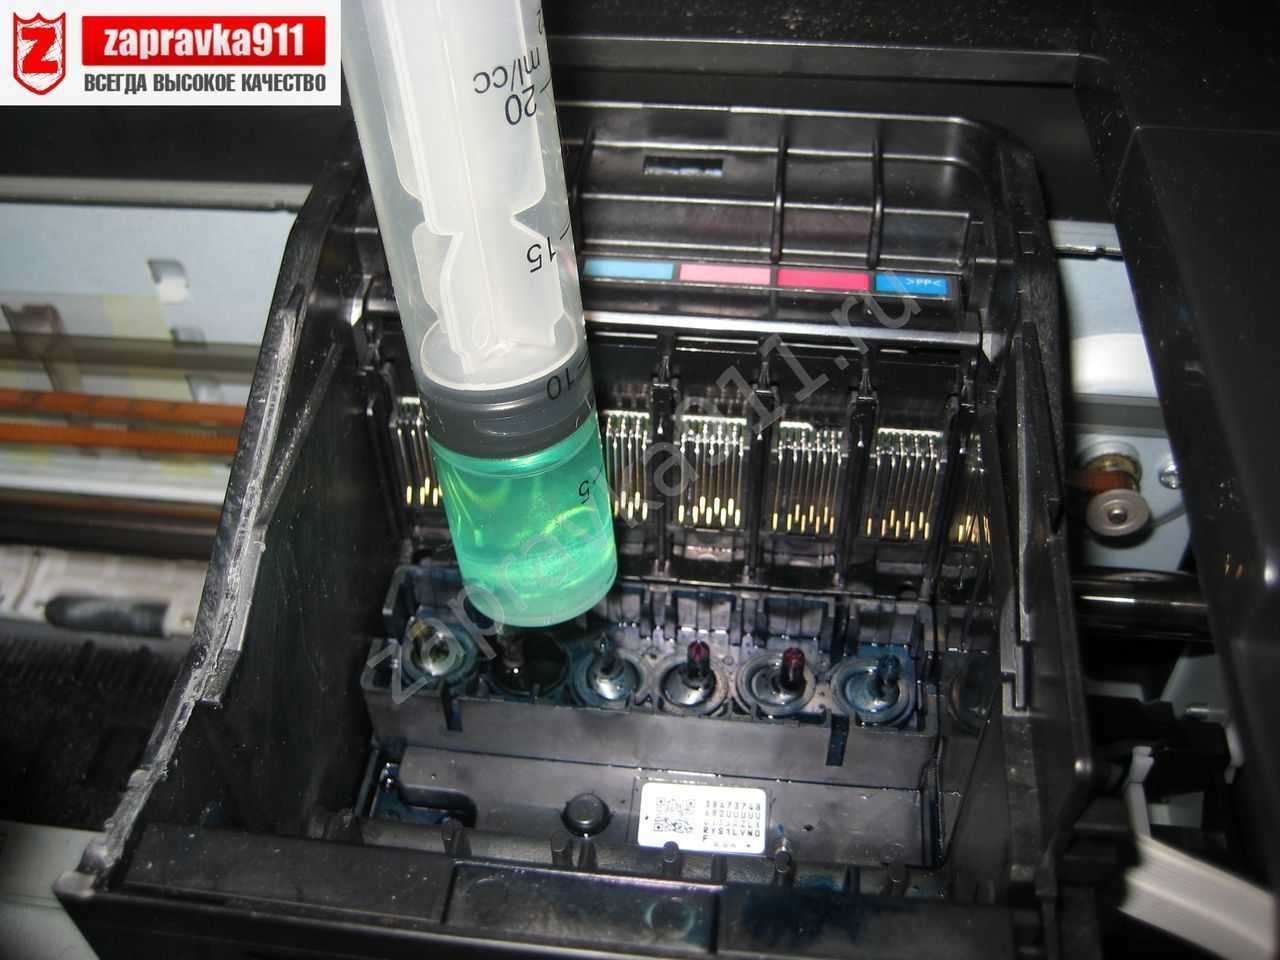 Промывка печатающих голов в двухкартриджных принтерах canon и hp – инструкция « инструкции « база знаний многочернил.ру